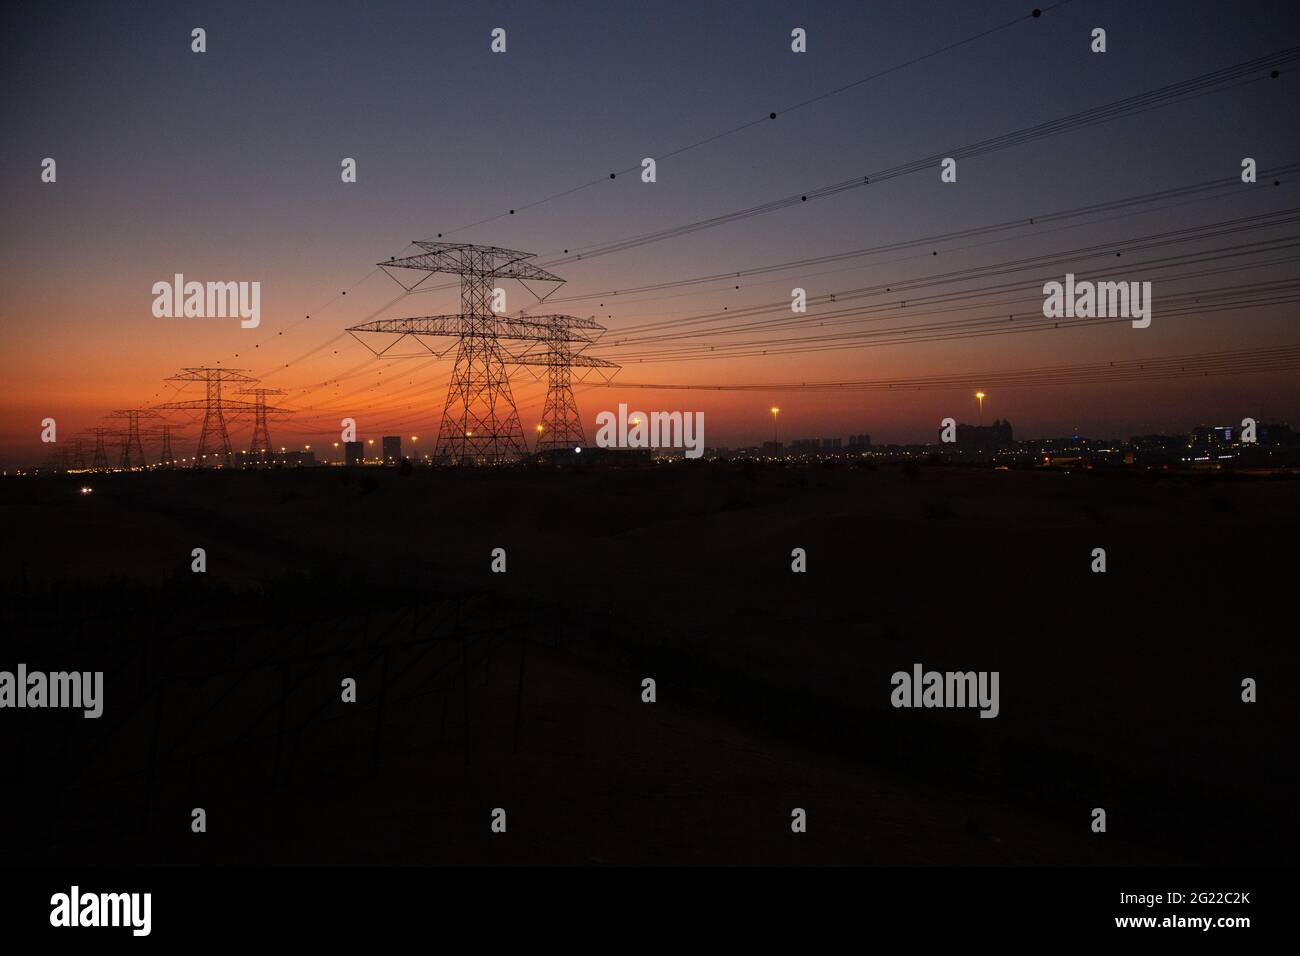 La trasmissione torreggia nel deserto di Dubai subito dopo il tramonto, quando l'ultimo del sole si illumina ancora nel cielo arancione. Foto Stock